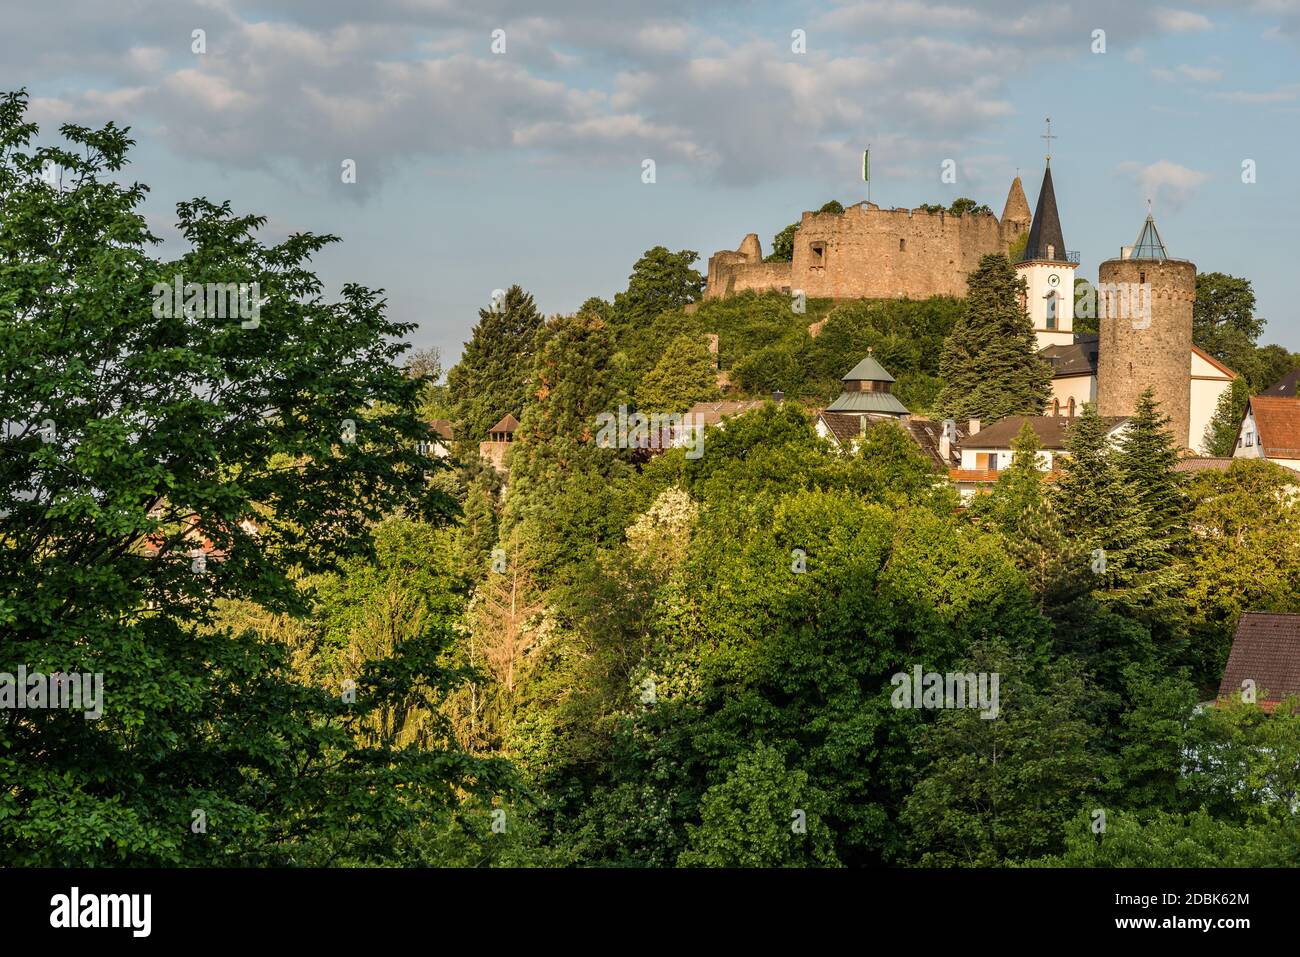 Burgruine Lindenfels mit Turm und Kirche im Morgenlicht, Odenwald, Hessen, Deutschland Banque D'Images